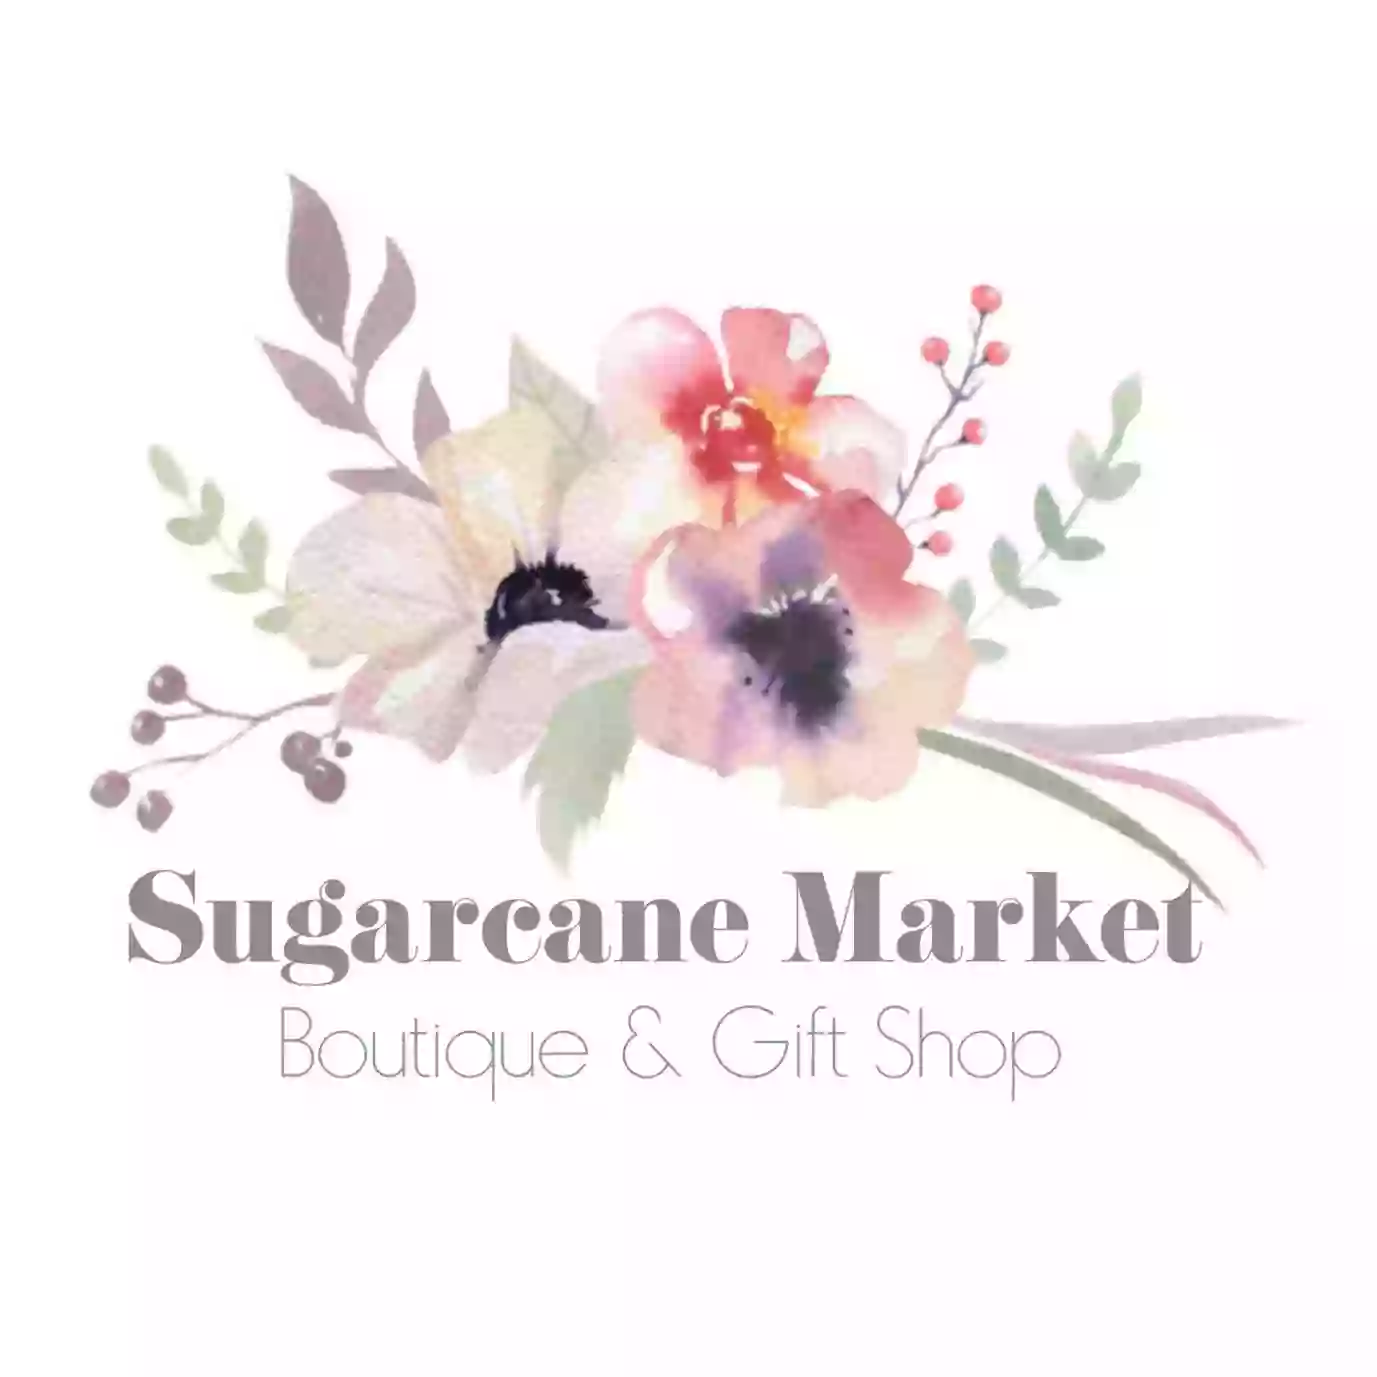 Sugarcane Market Boutique & Gift Shop